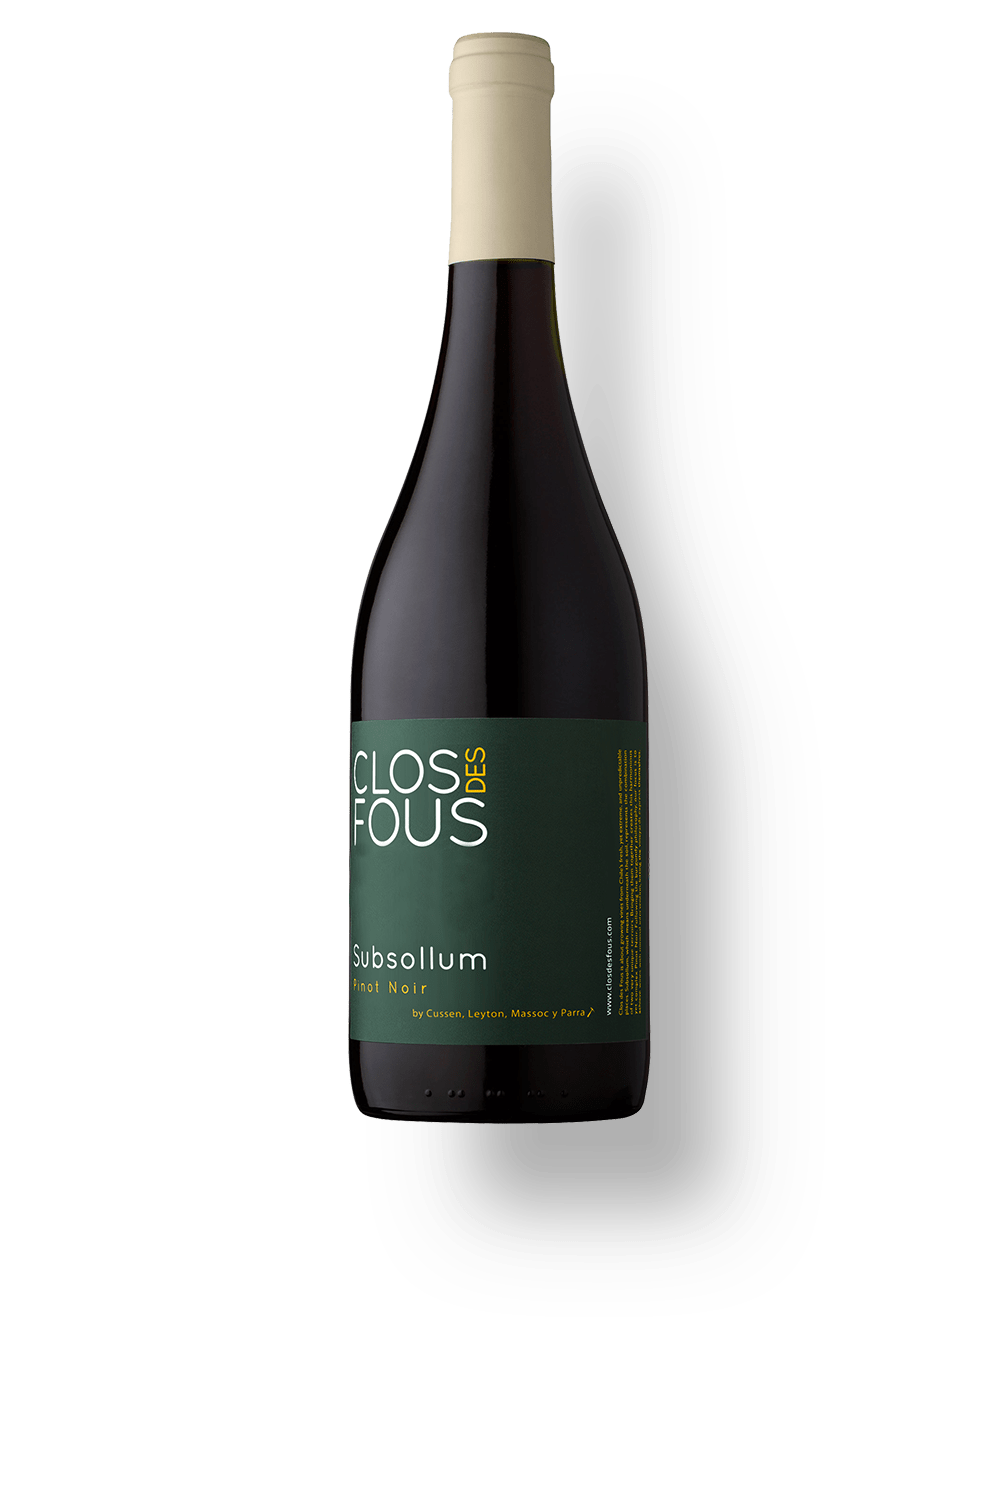 Clos-Des-Fous-Subsollum-Pinot-Noir